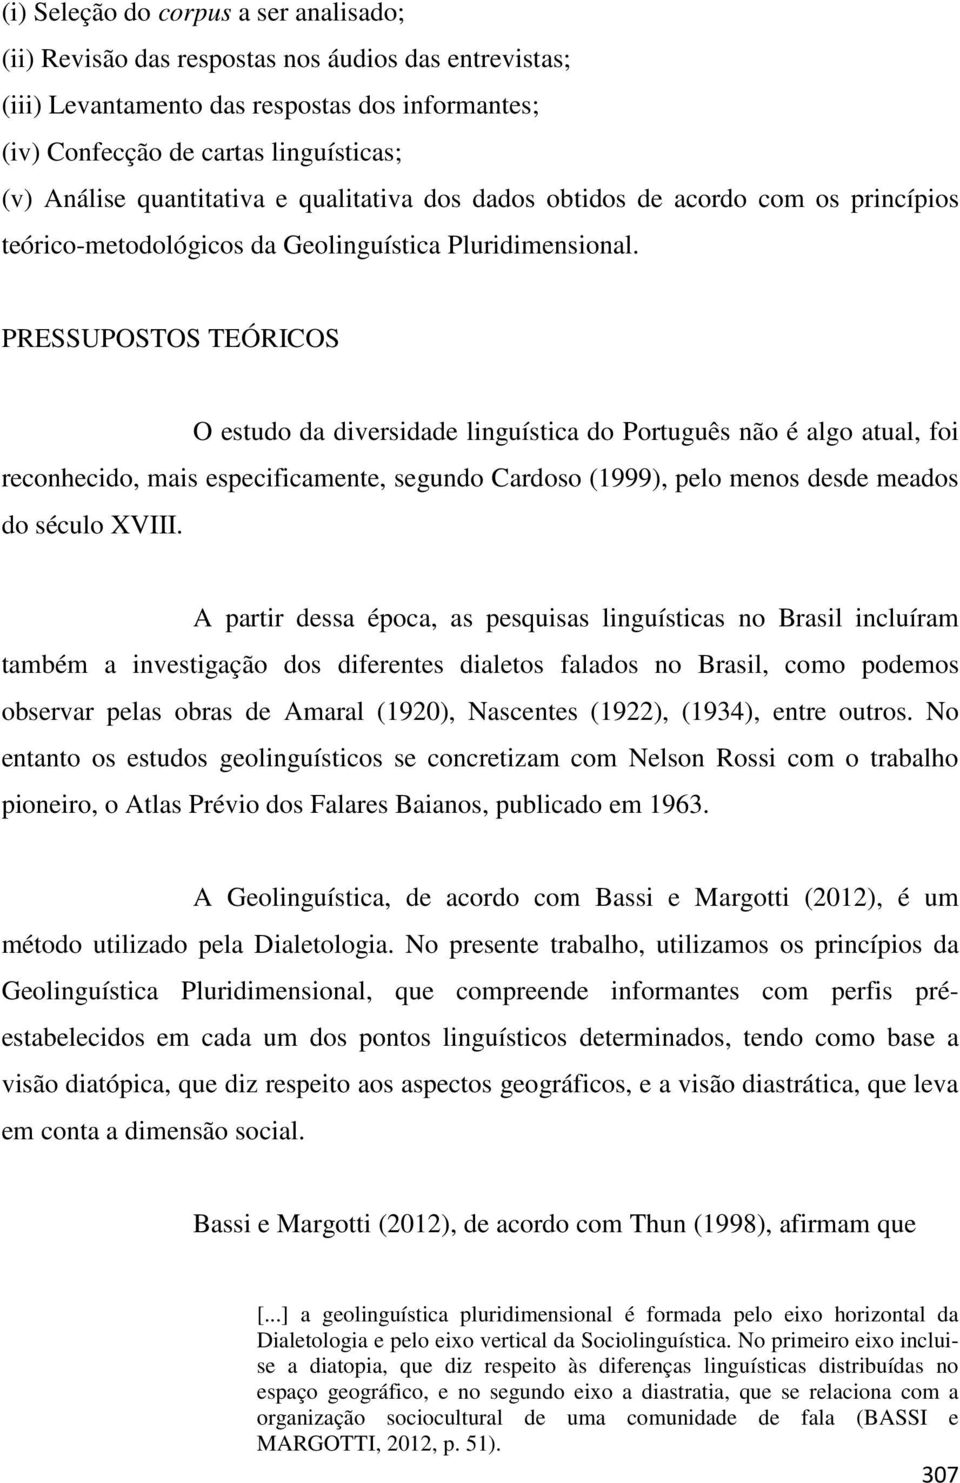 PRESSUPOSTOS TEÓRICOS O estudo da diversidade linguística do Português não é algo atual, foi reconhecido, mais especificamente, segundo Cardoso (1999), pelo menos desde meados do século XVIII.